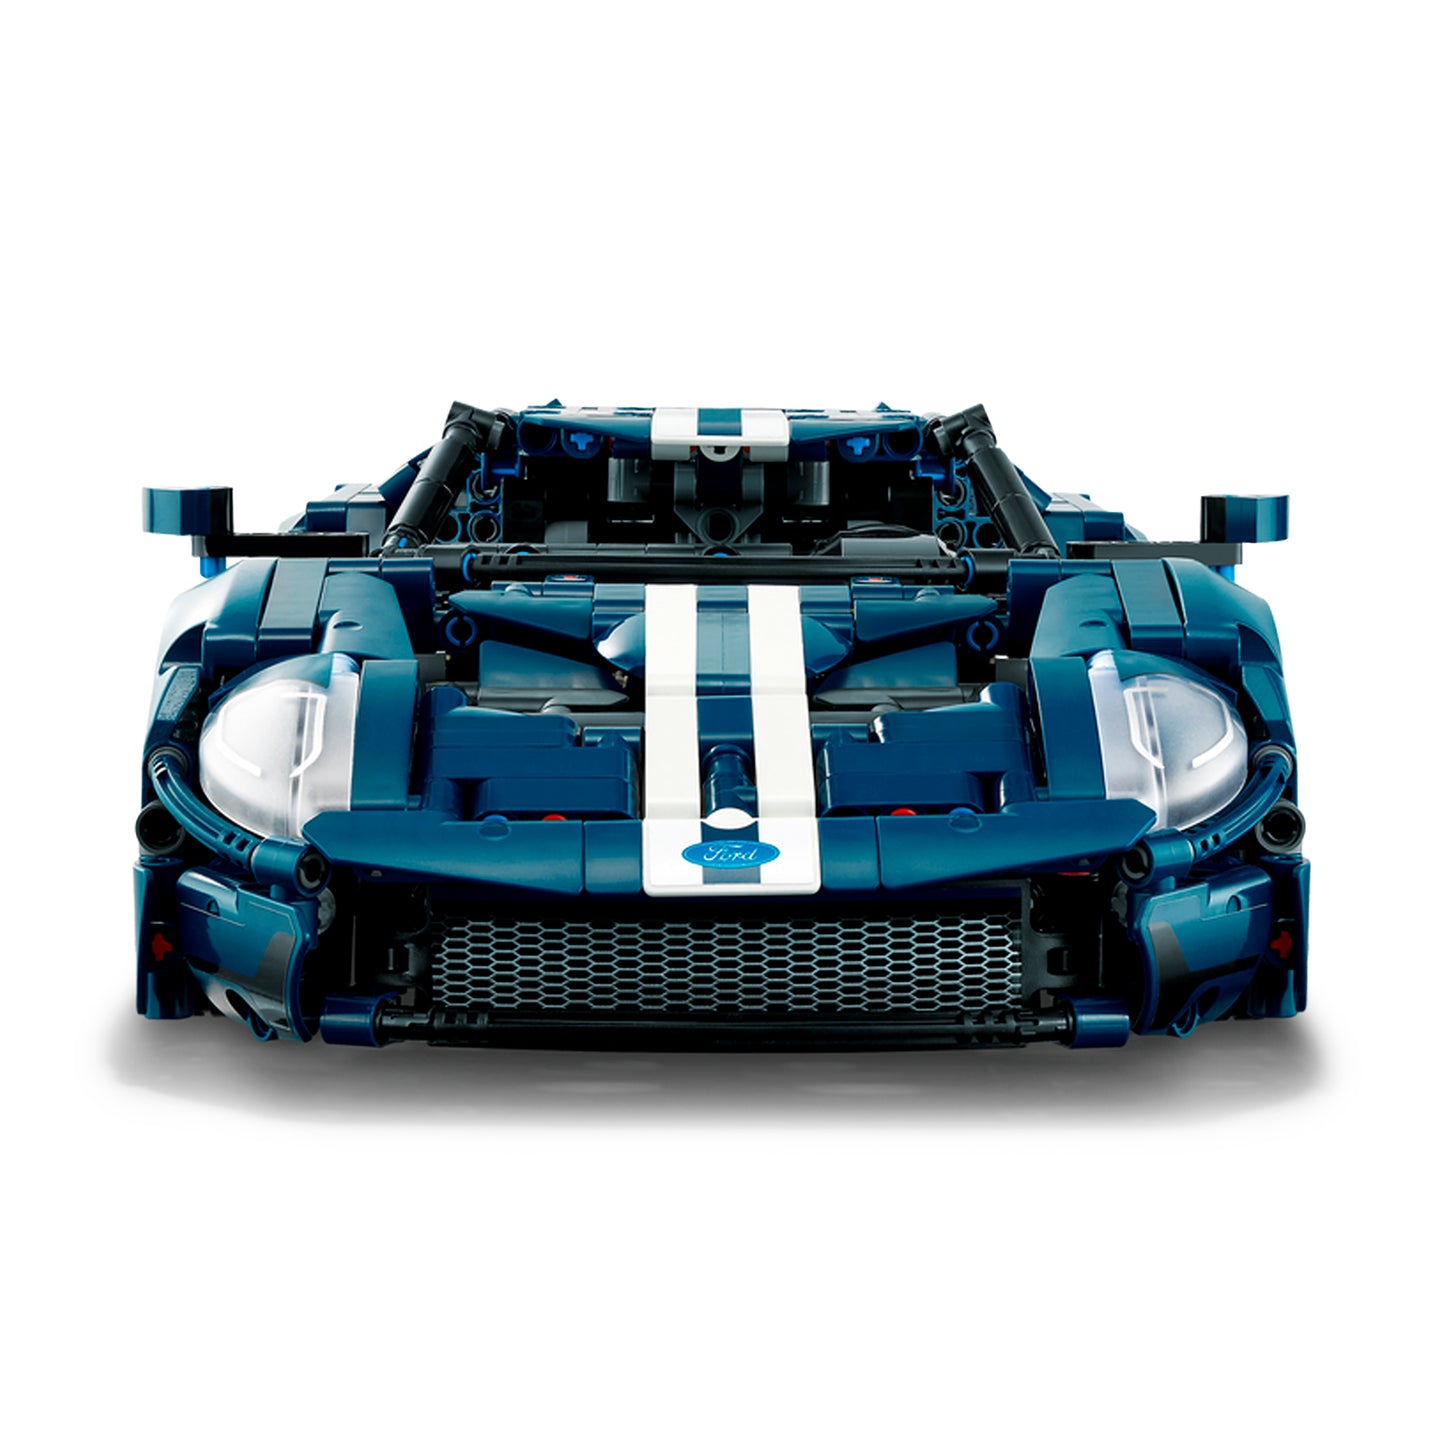 LEGO 2022 Ford GT